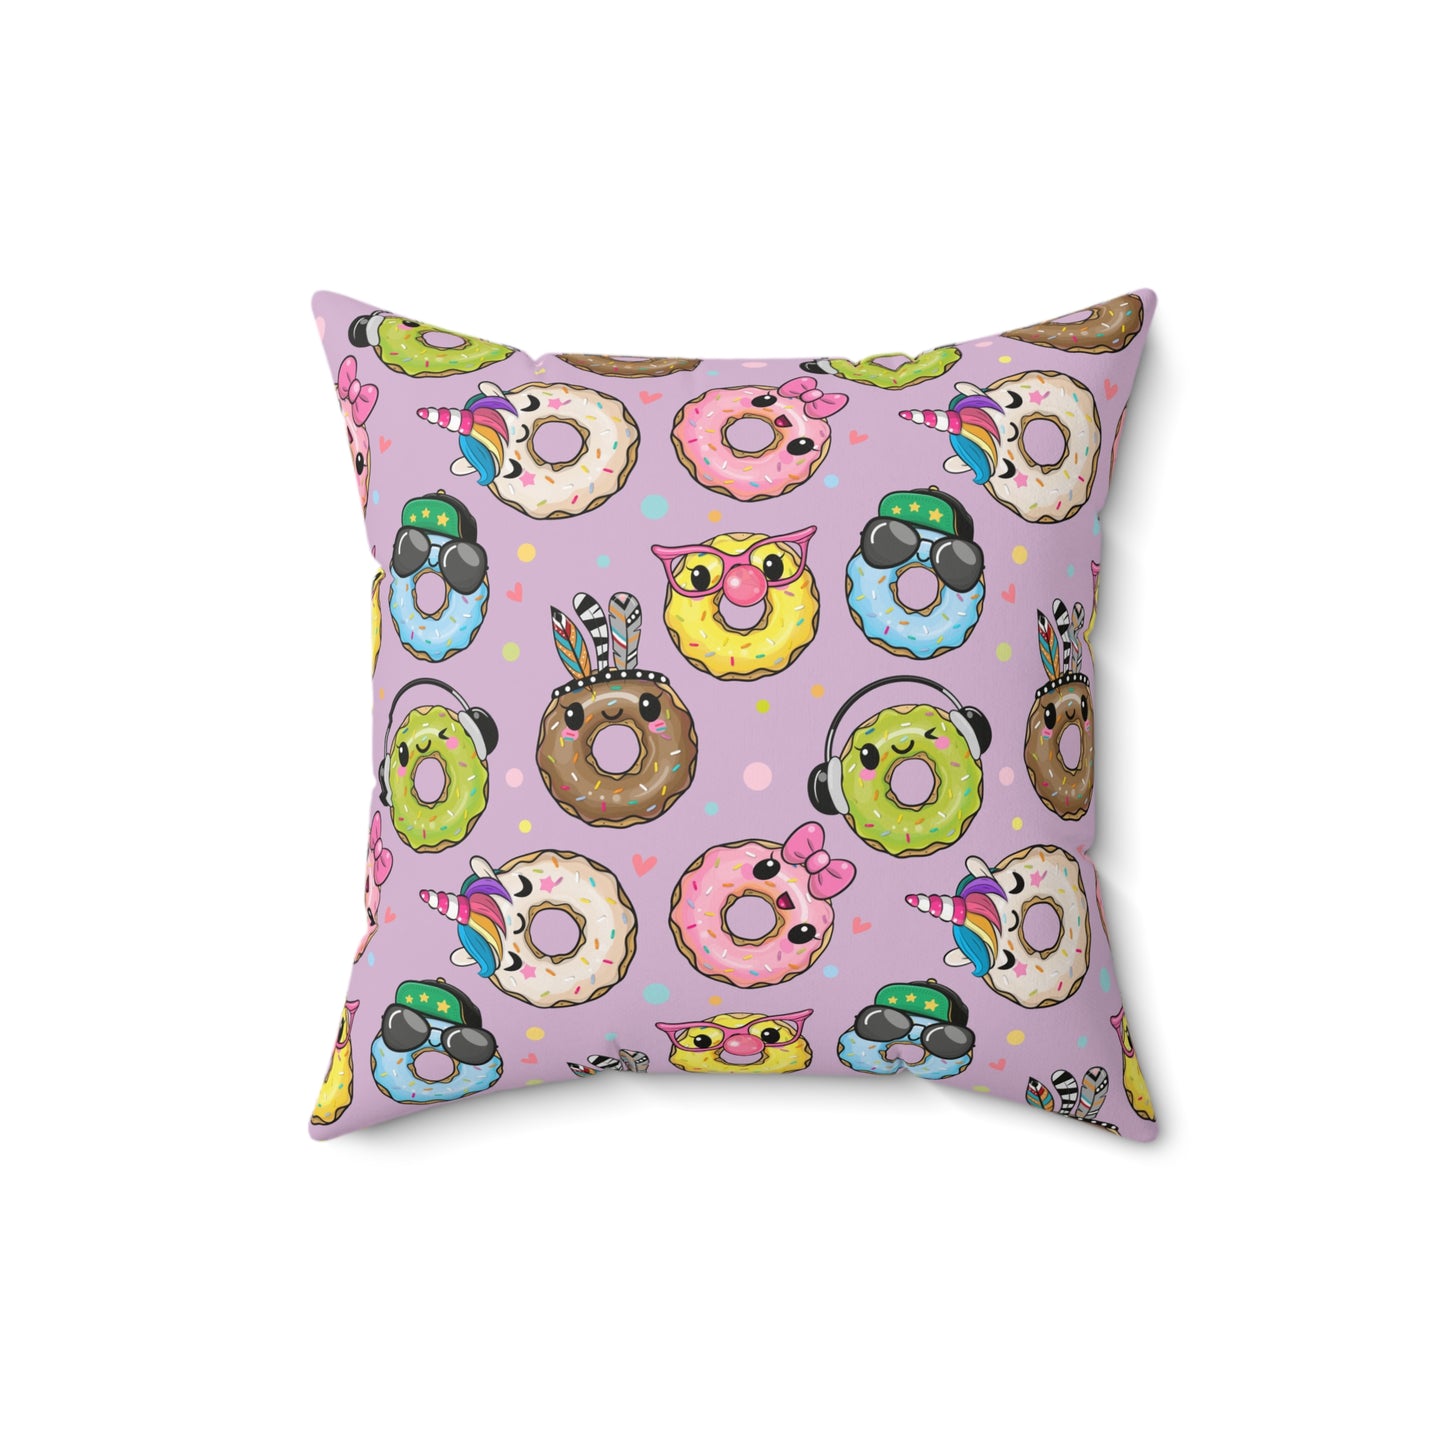 Kawaii Donuts Spun Polyester Square Pillow